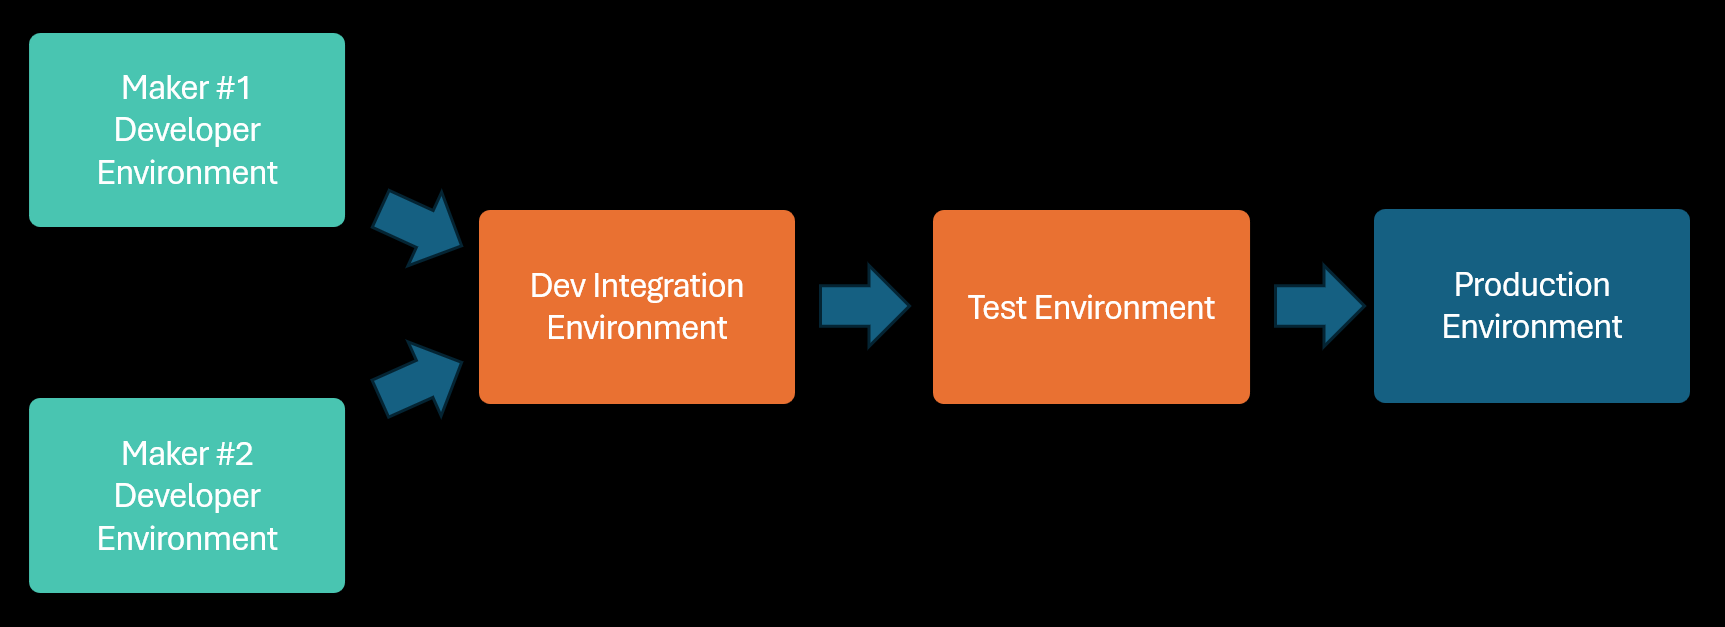 Диаграма, илюстрираща корпоративно приложение в процес на разработка в индивидуални среди, комбинирани в споделена интеграционна среда и след това тествани и внедрени в среди, които се споделят с други приложения